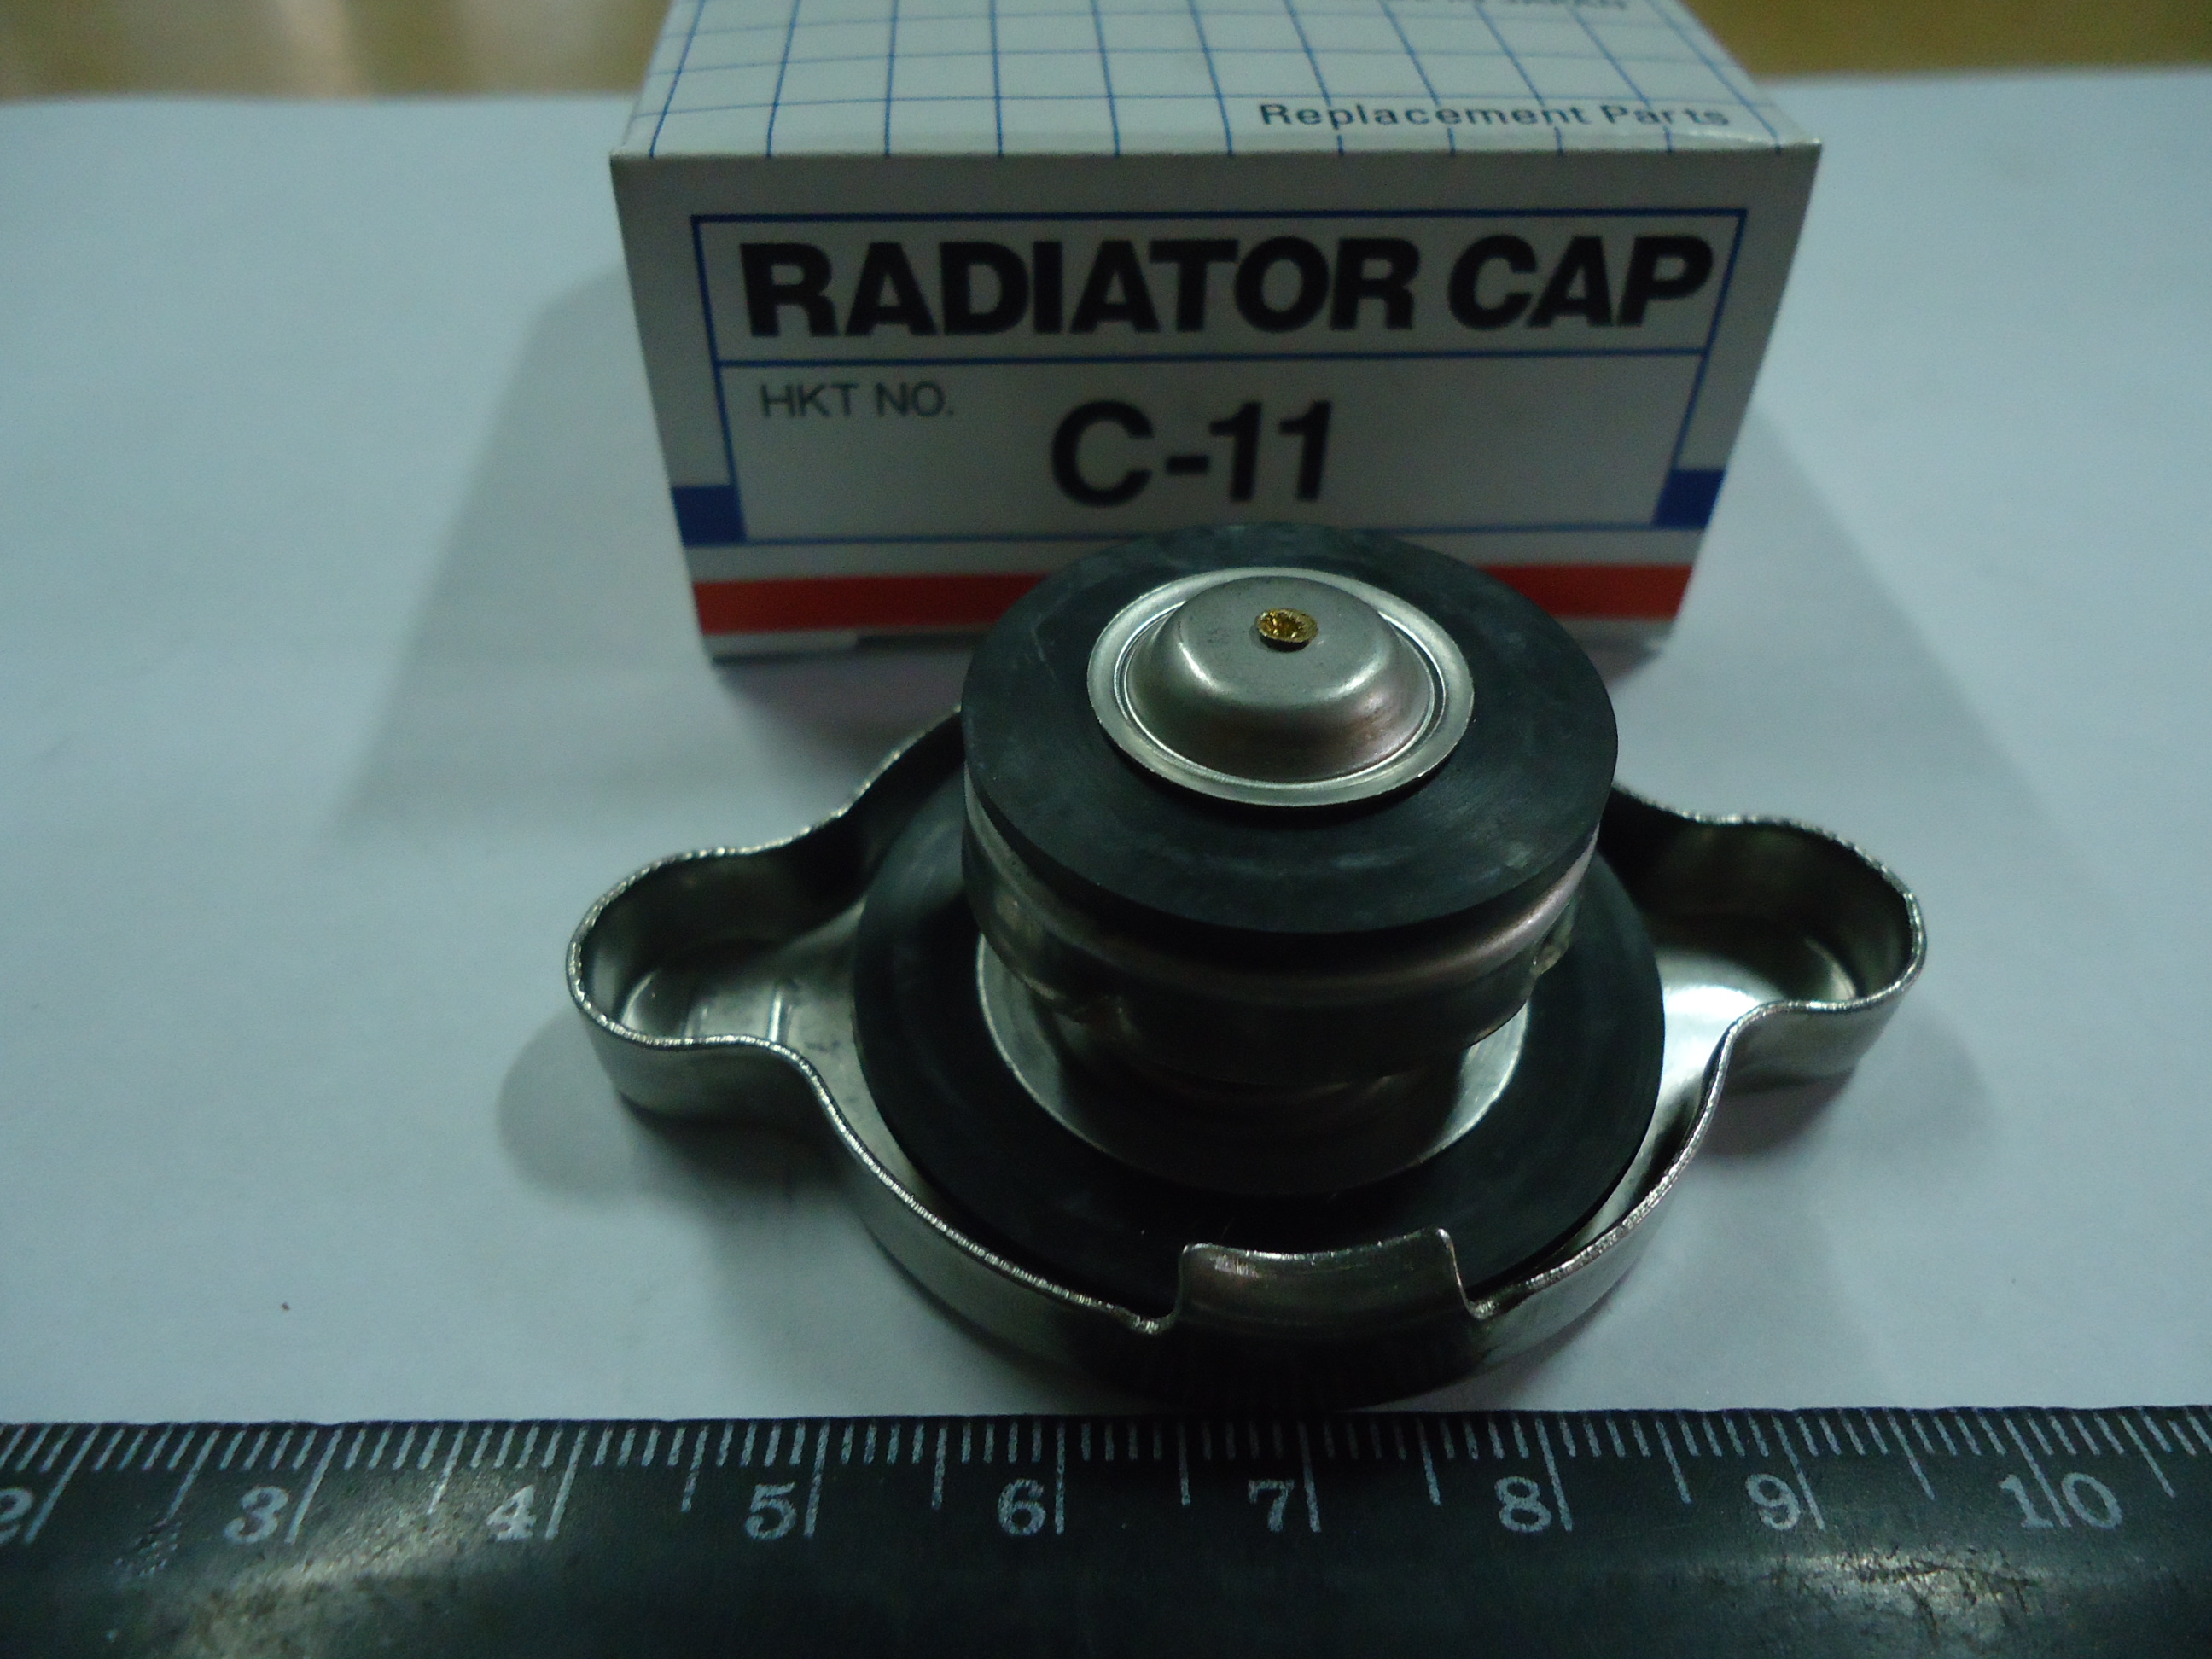 Крышка радиатора HKT C11 1,1 кг/см2